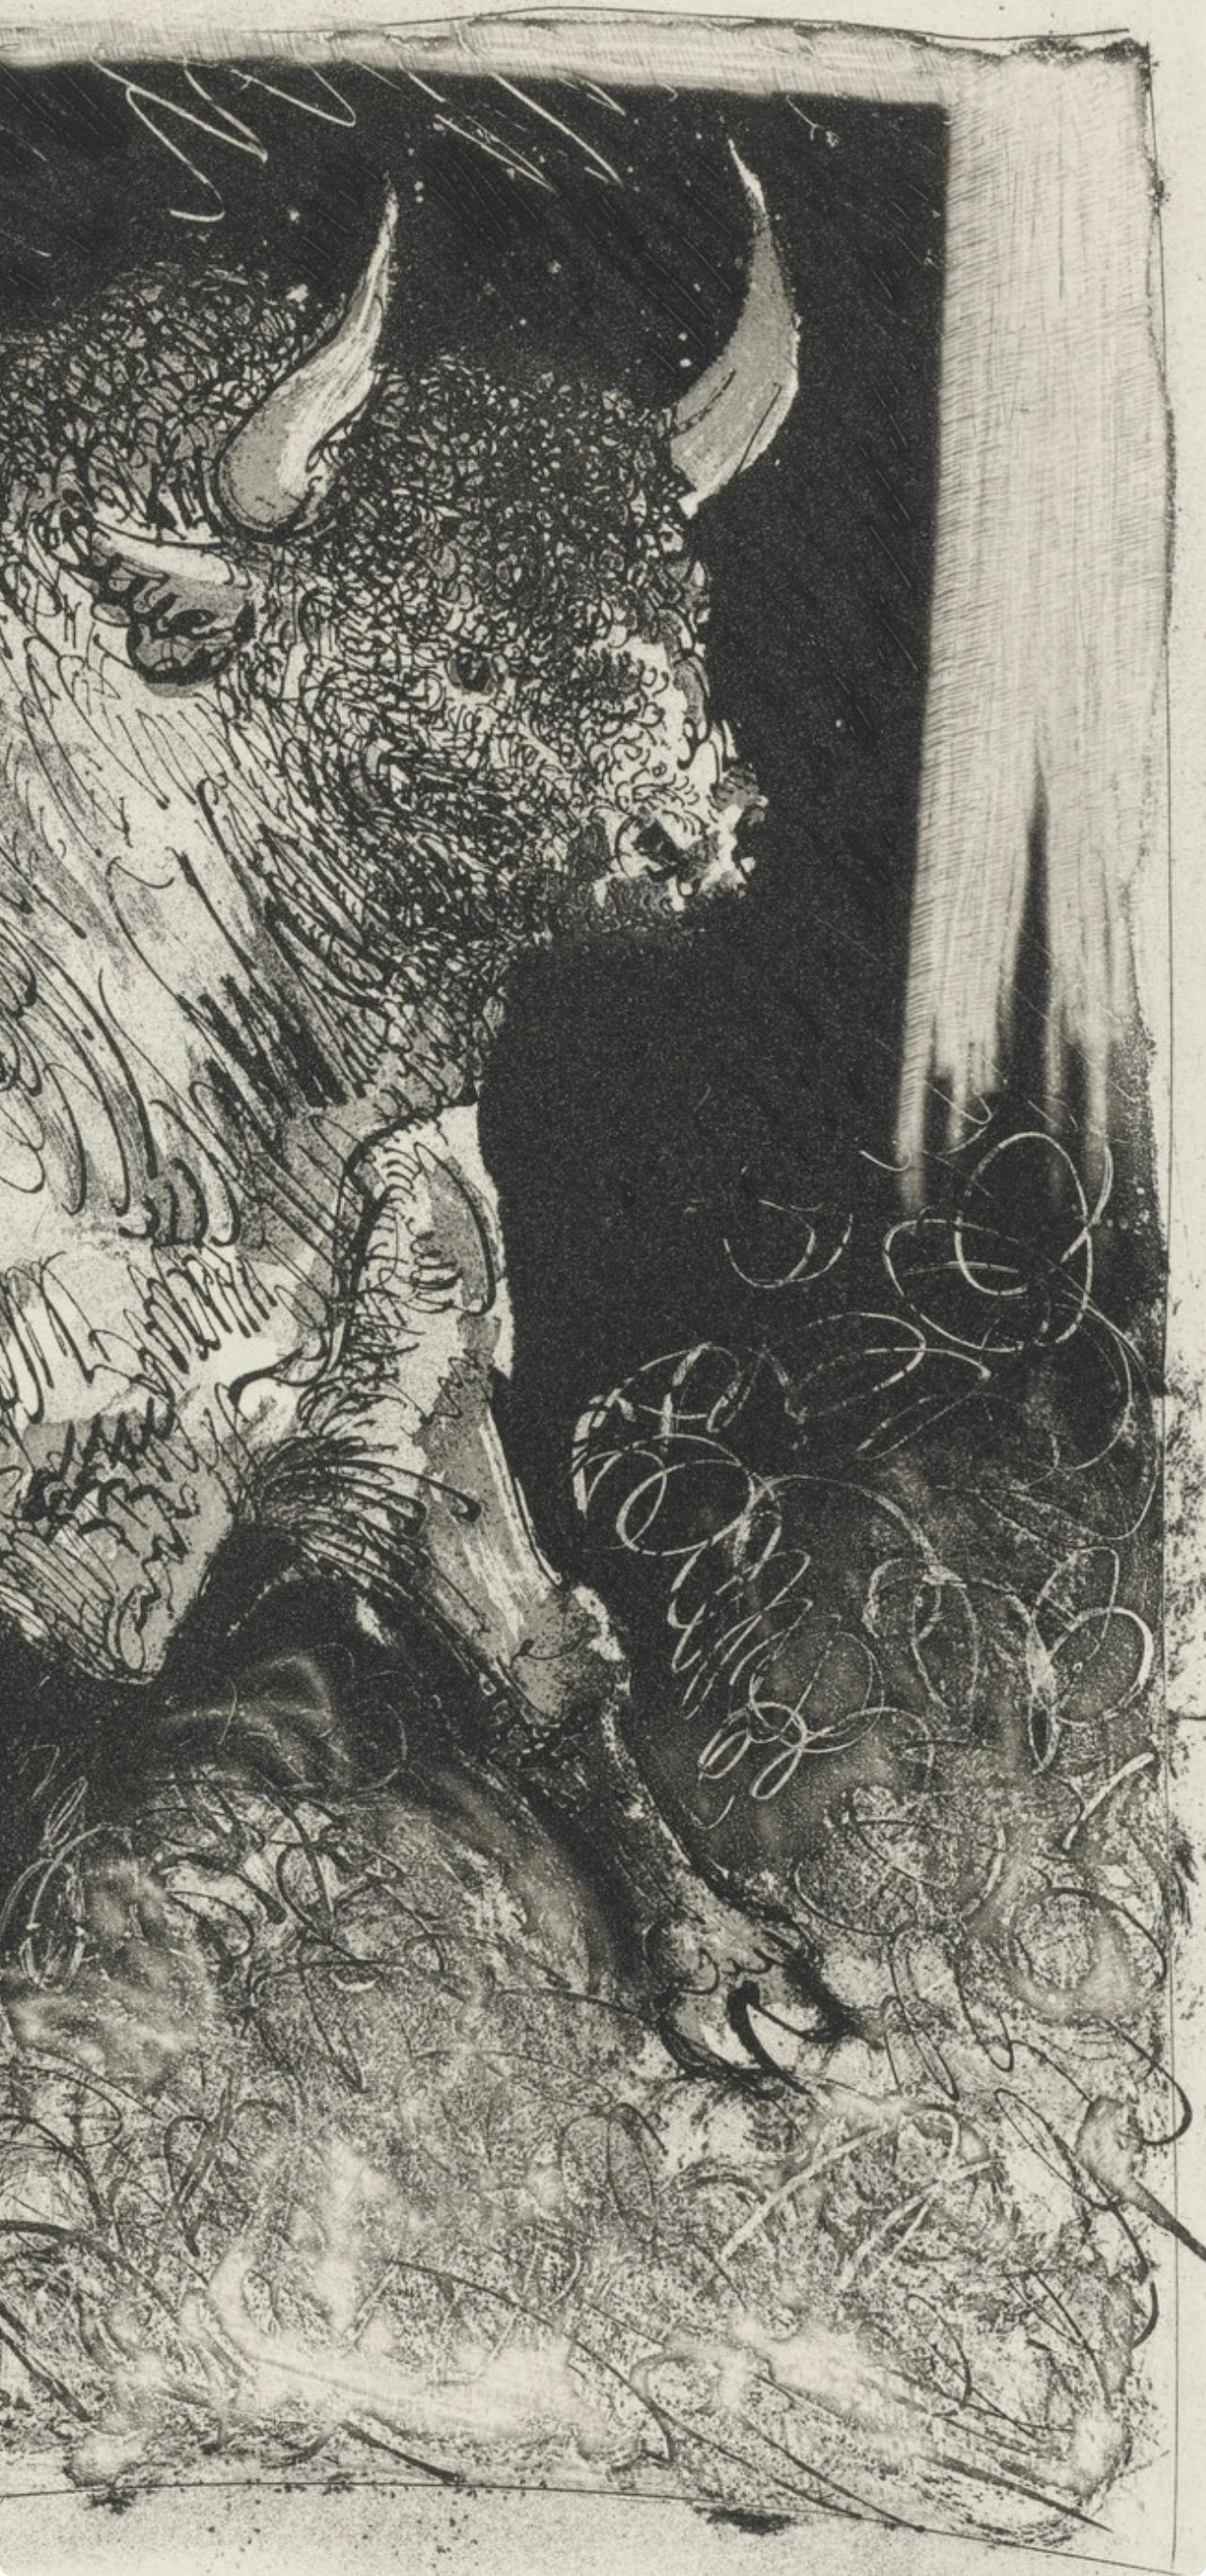 Picasso, Le Taureau, Histoire naturelle (after) - Print by Pablo Picasso